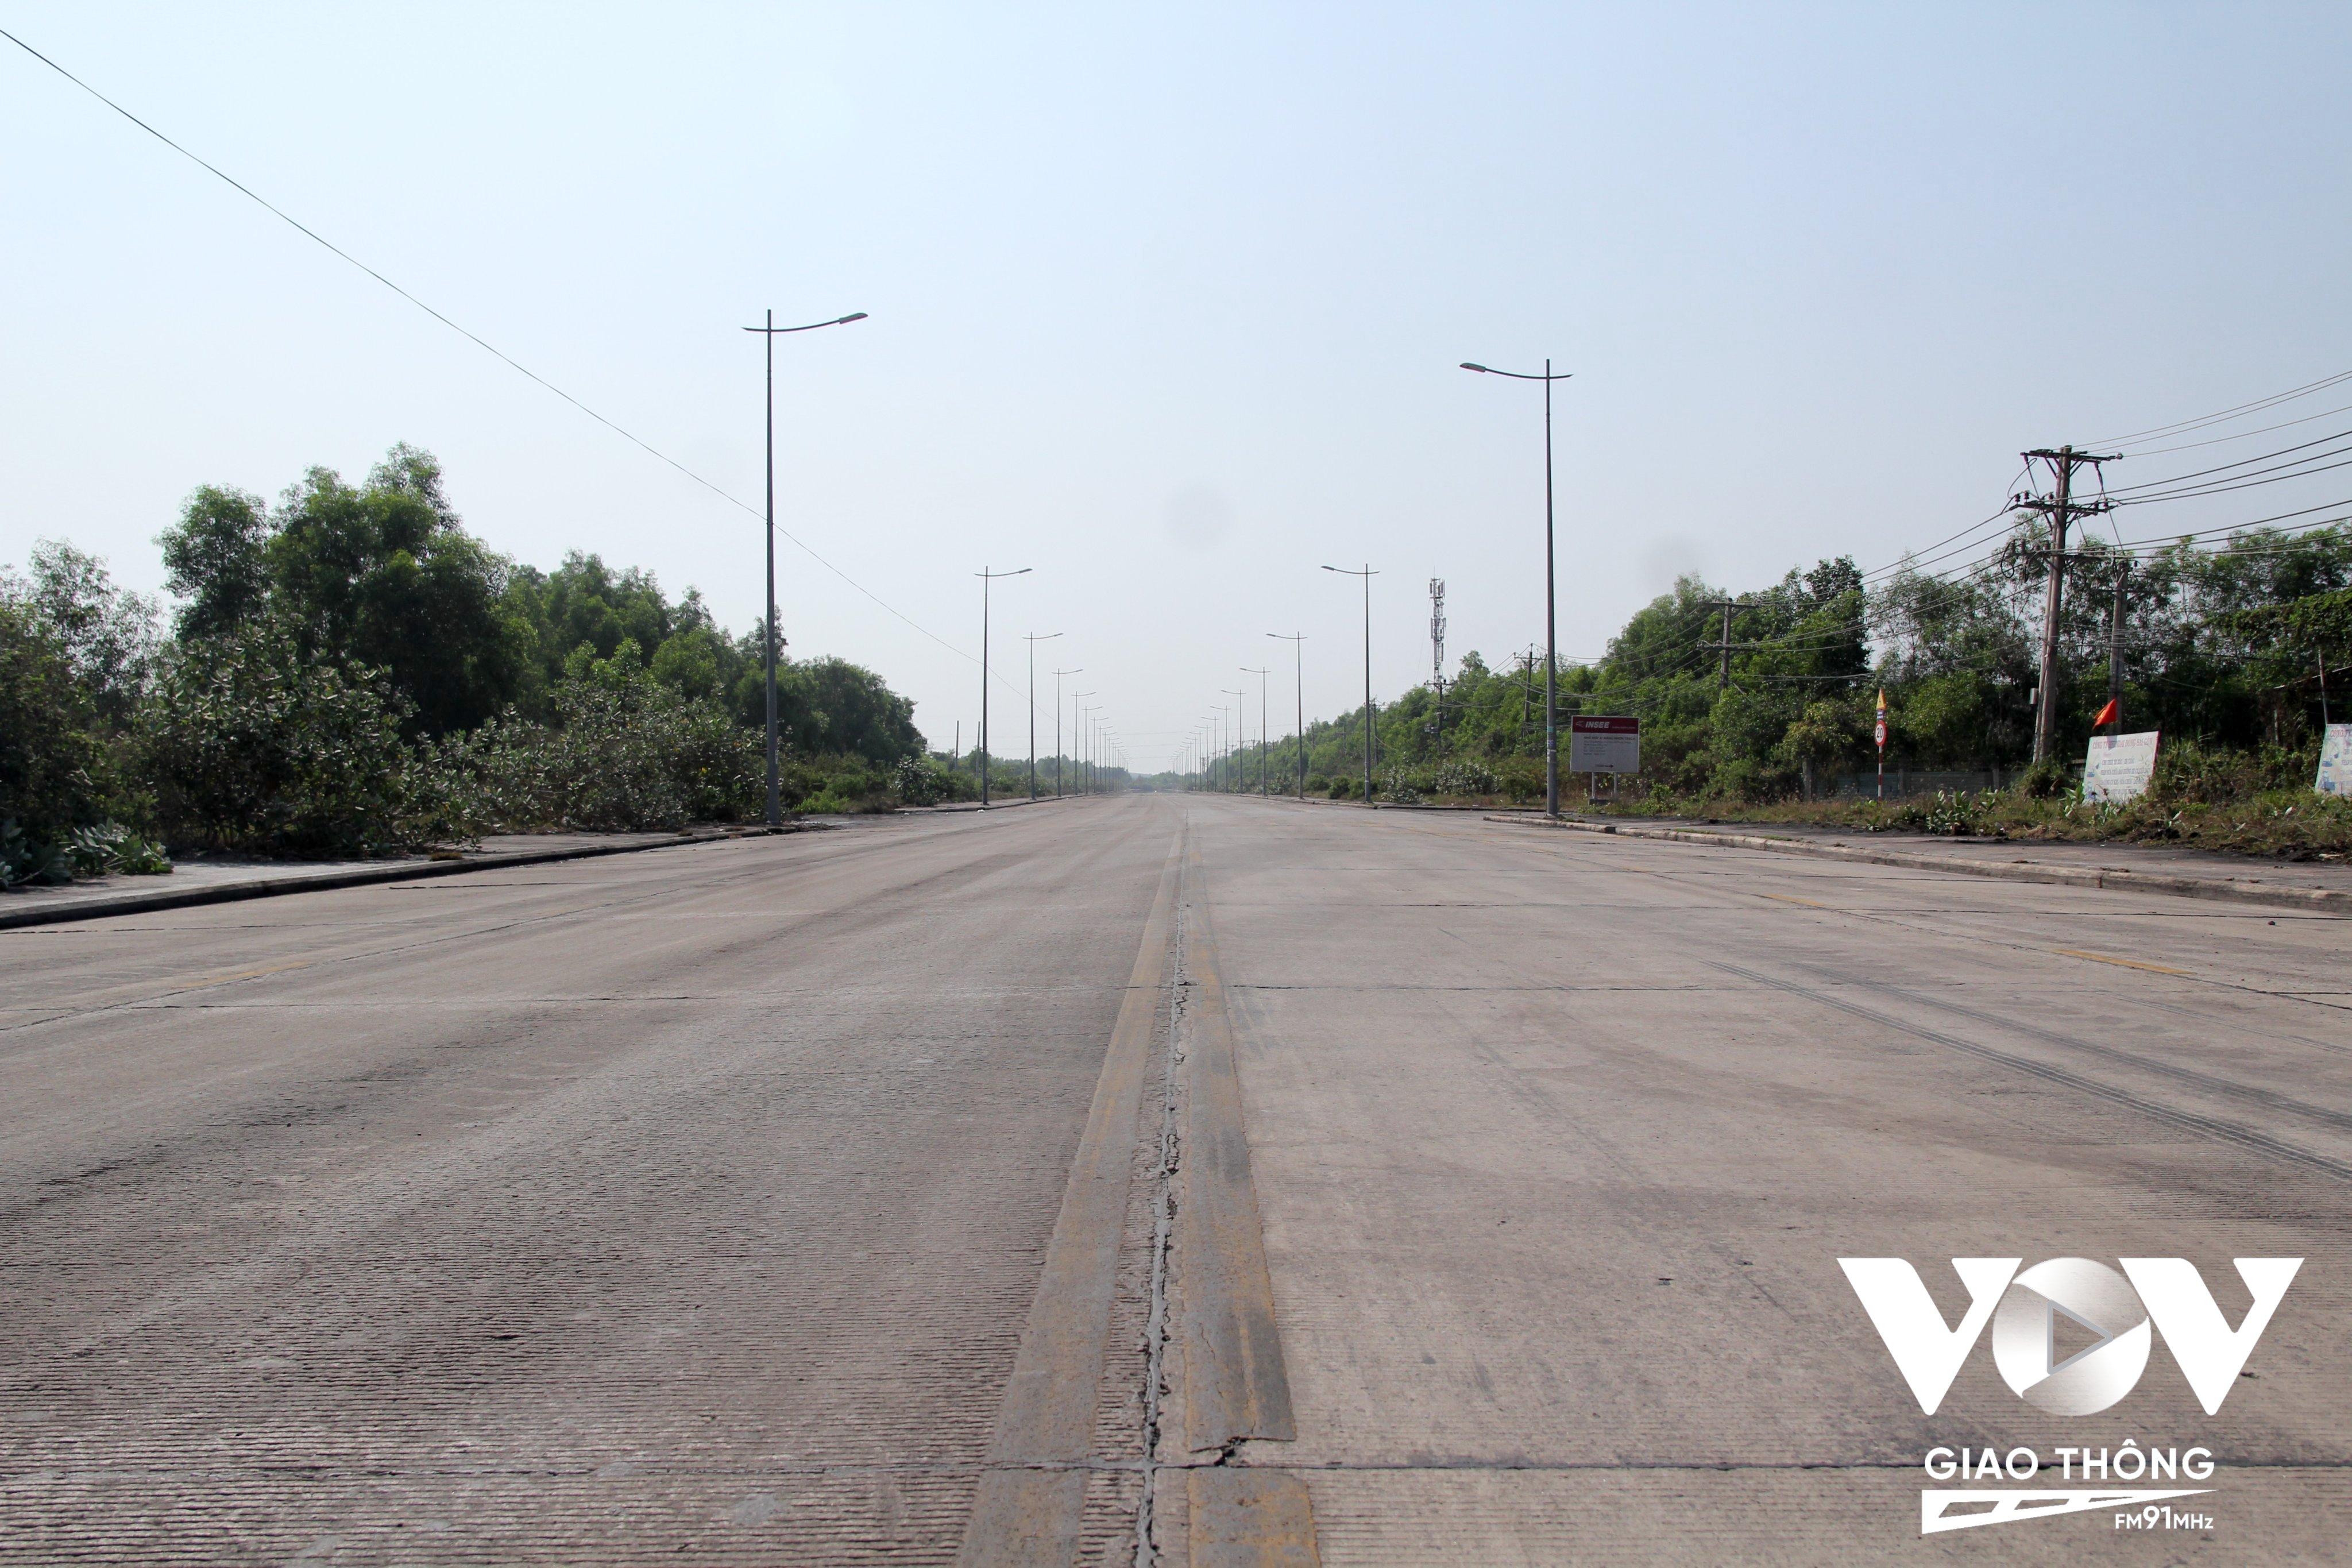 Tình trạng bụi than phủ khắp hai bên đường dẫn vào Công ty Long Thuận phóng viên phản ánh trước đó hiện đã được khắc phục.